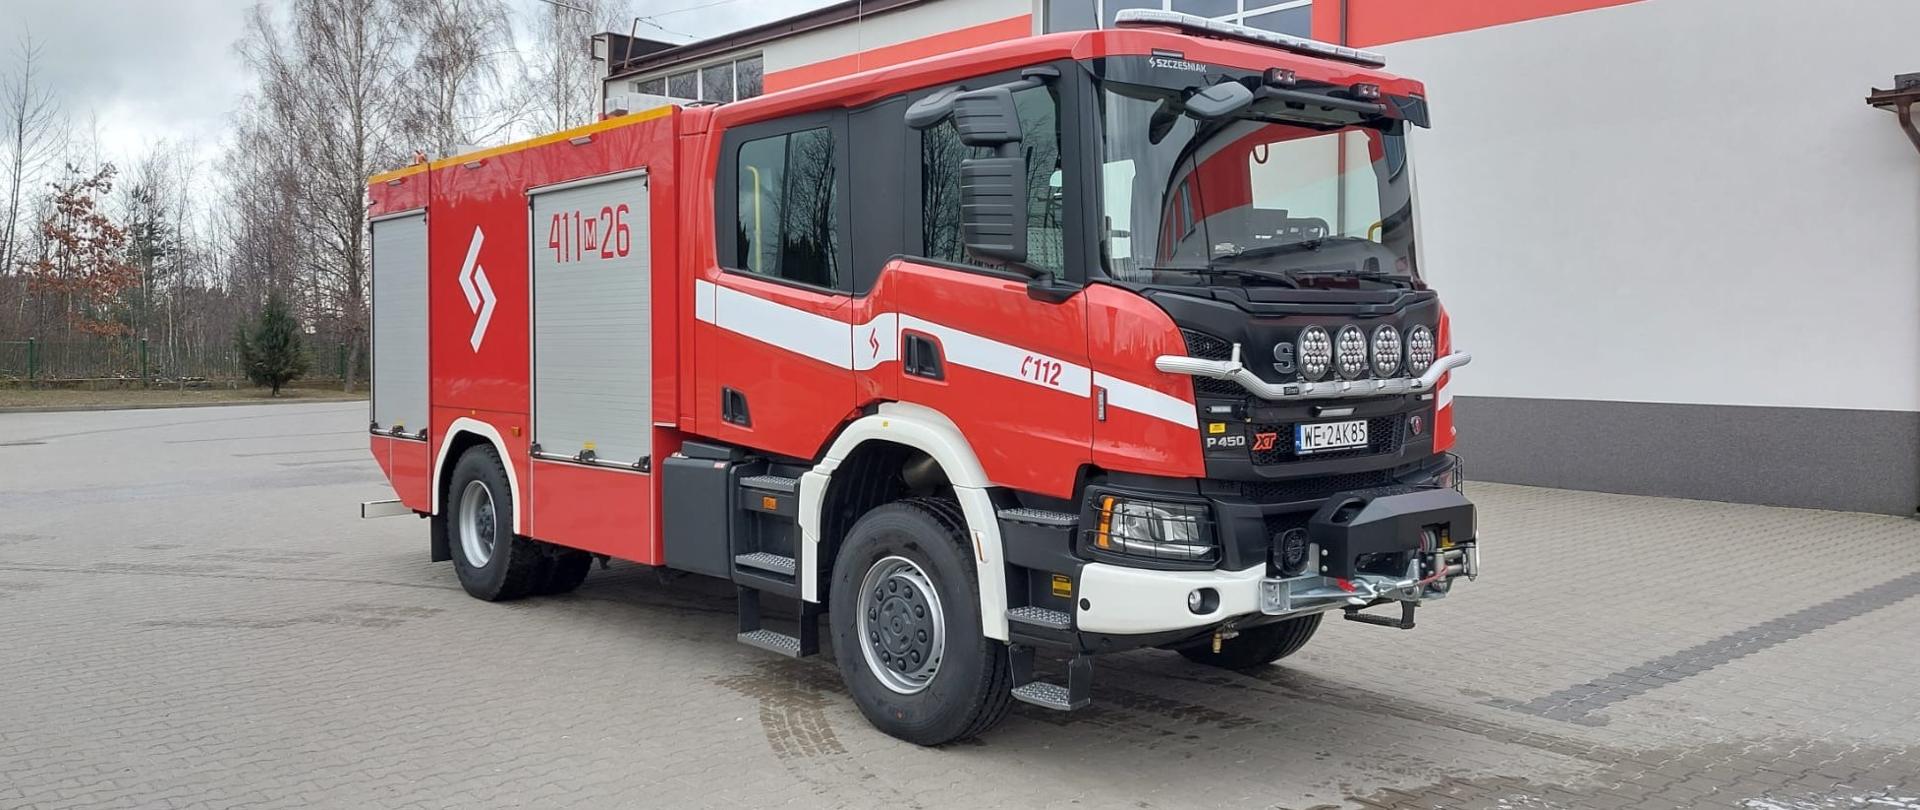 Nowy wóz strażacki Komendy Powiatowej PSP w Ciechanowie na terenie jednostki KP PSP w Ciechanowie